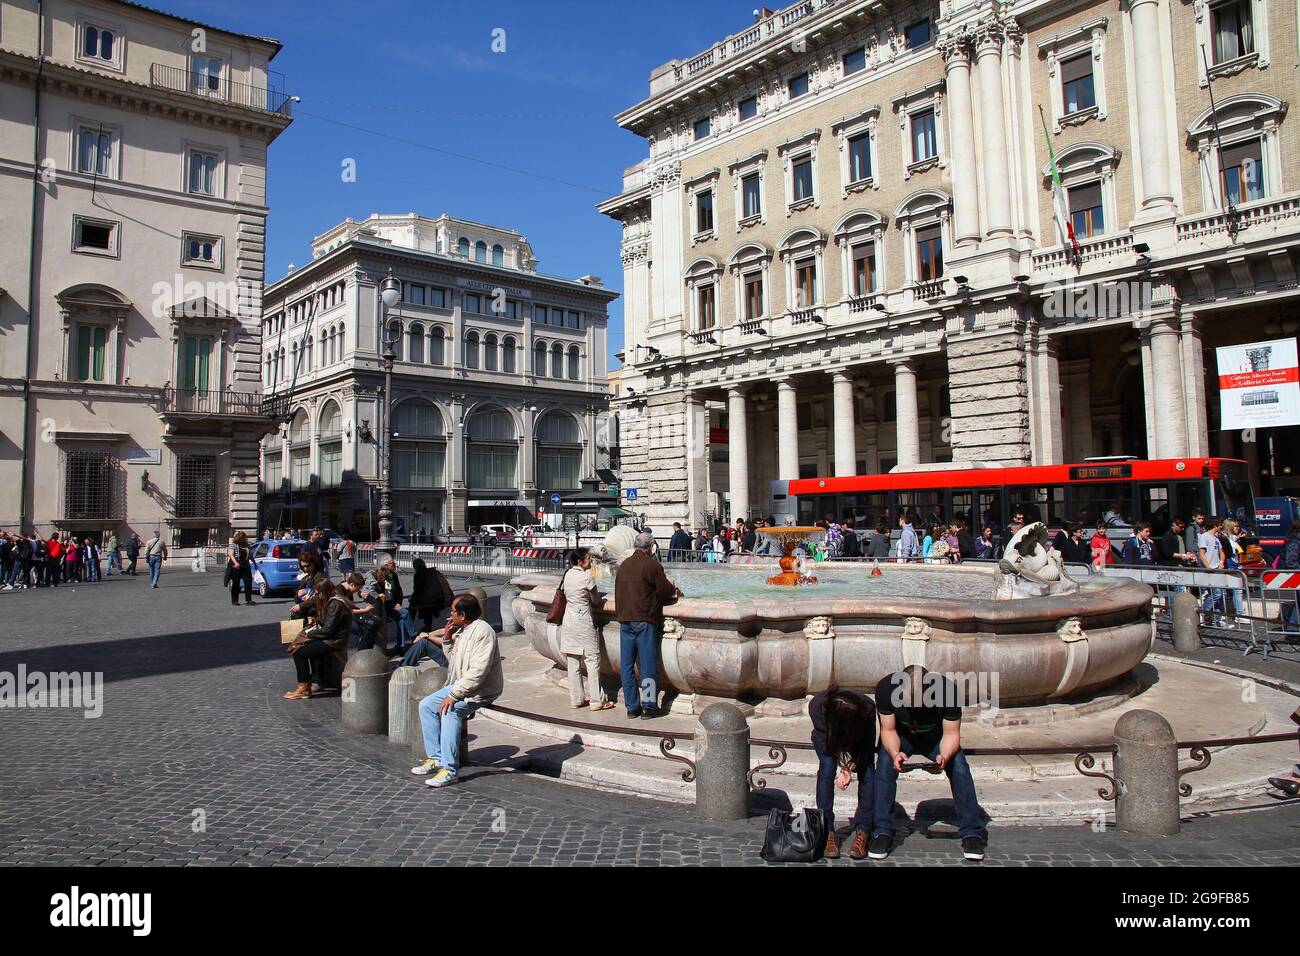 ROM, ITALIEN - 10. APRIL 2012: Am Brunnen auf dem Piazza Colonna in Rom sitzen Menschen. Nach offiziellen Angaben wurde Rom von 12.6 Millionen Menschen besucht Stockfoto